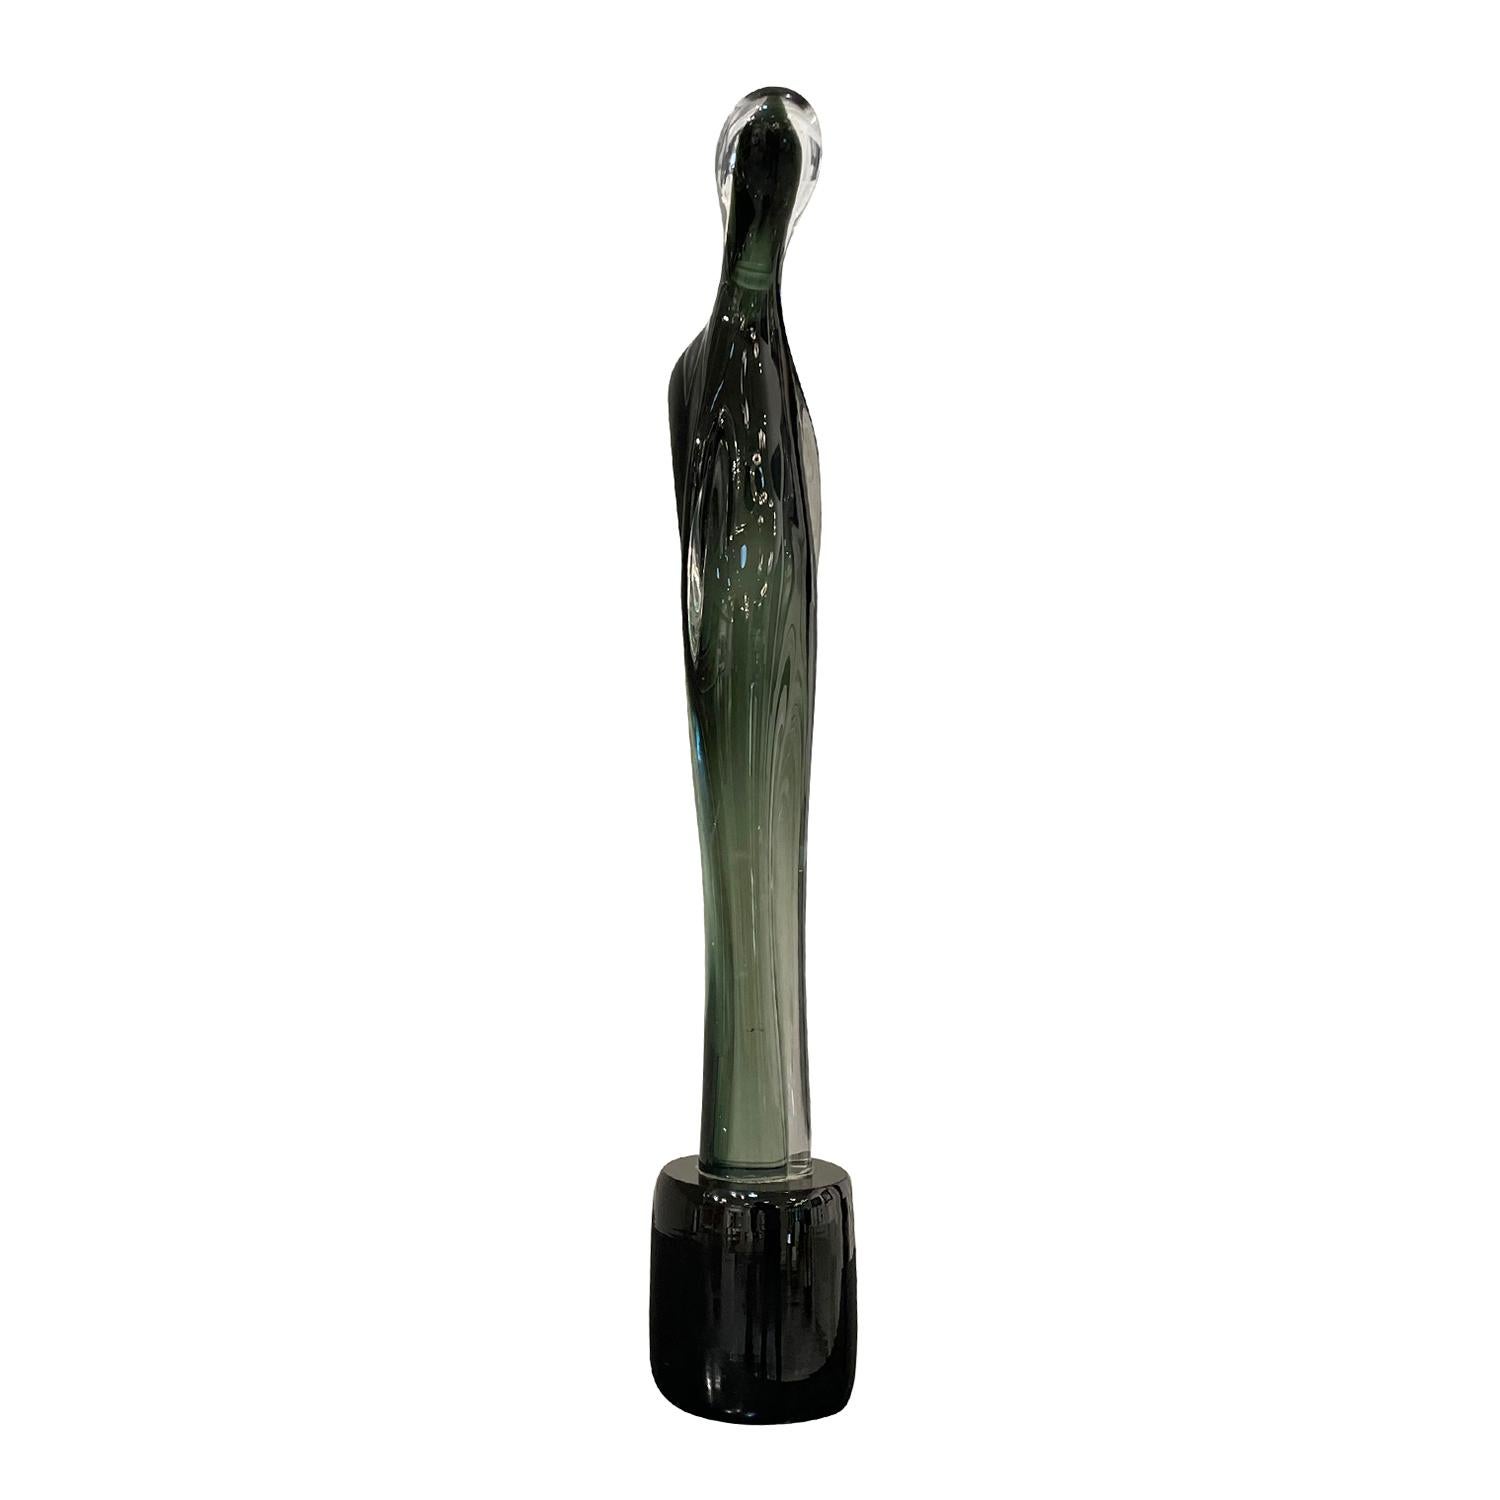 Sculpture abstraite haute et arquée en verre de Murano coloré soufflé à la bouche, en bon état, de couleur vert clair et noir. La pièce décorative en verre fumé est soutenue par une base ronde. Usure conforme à l'âge et à l'utilisation. Circa 1970 -